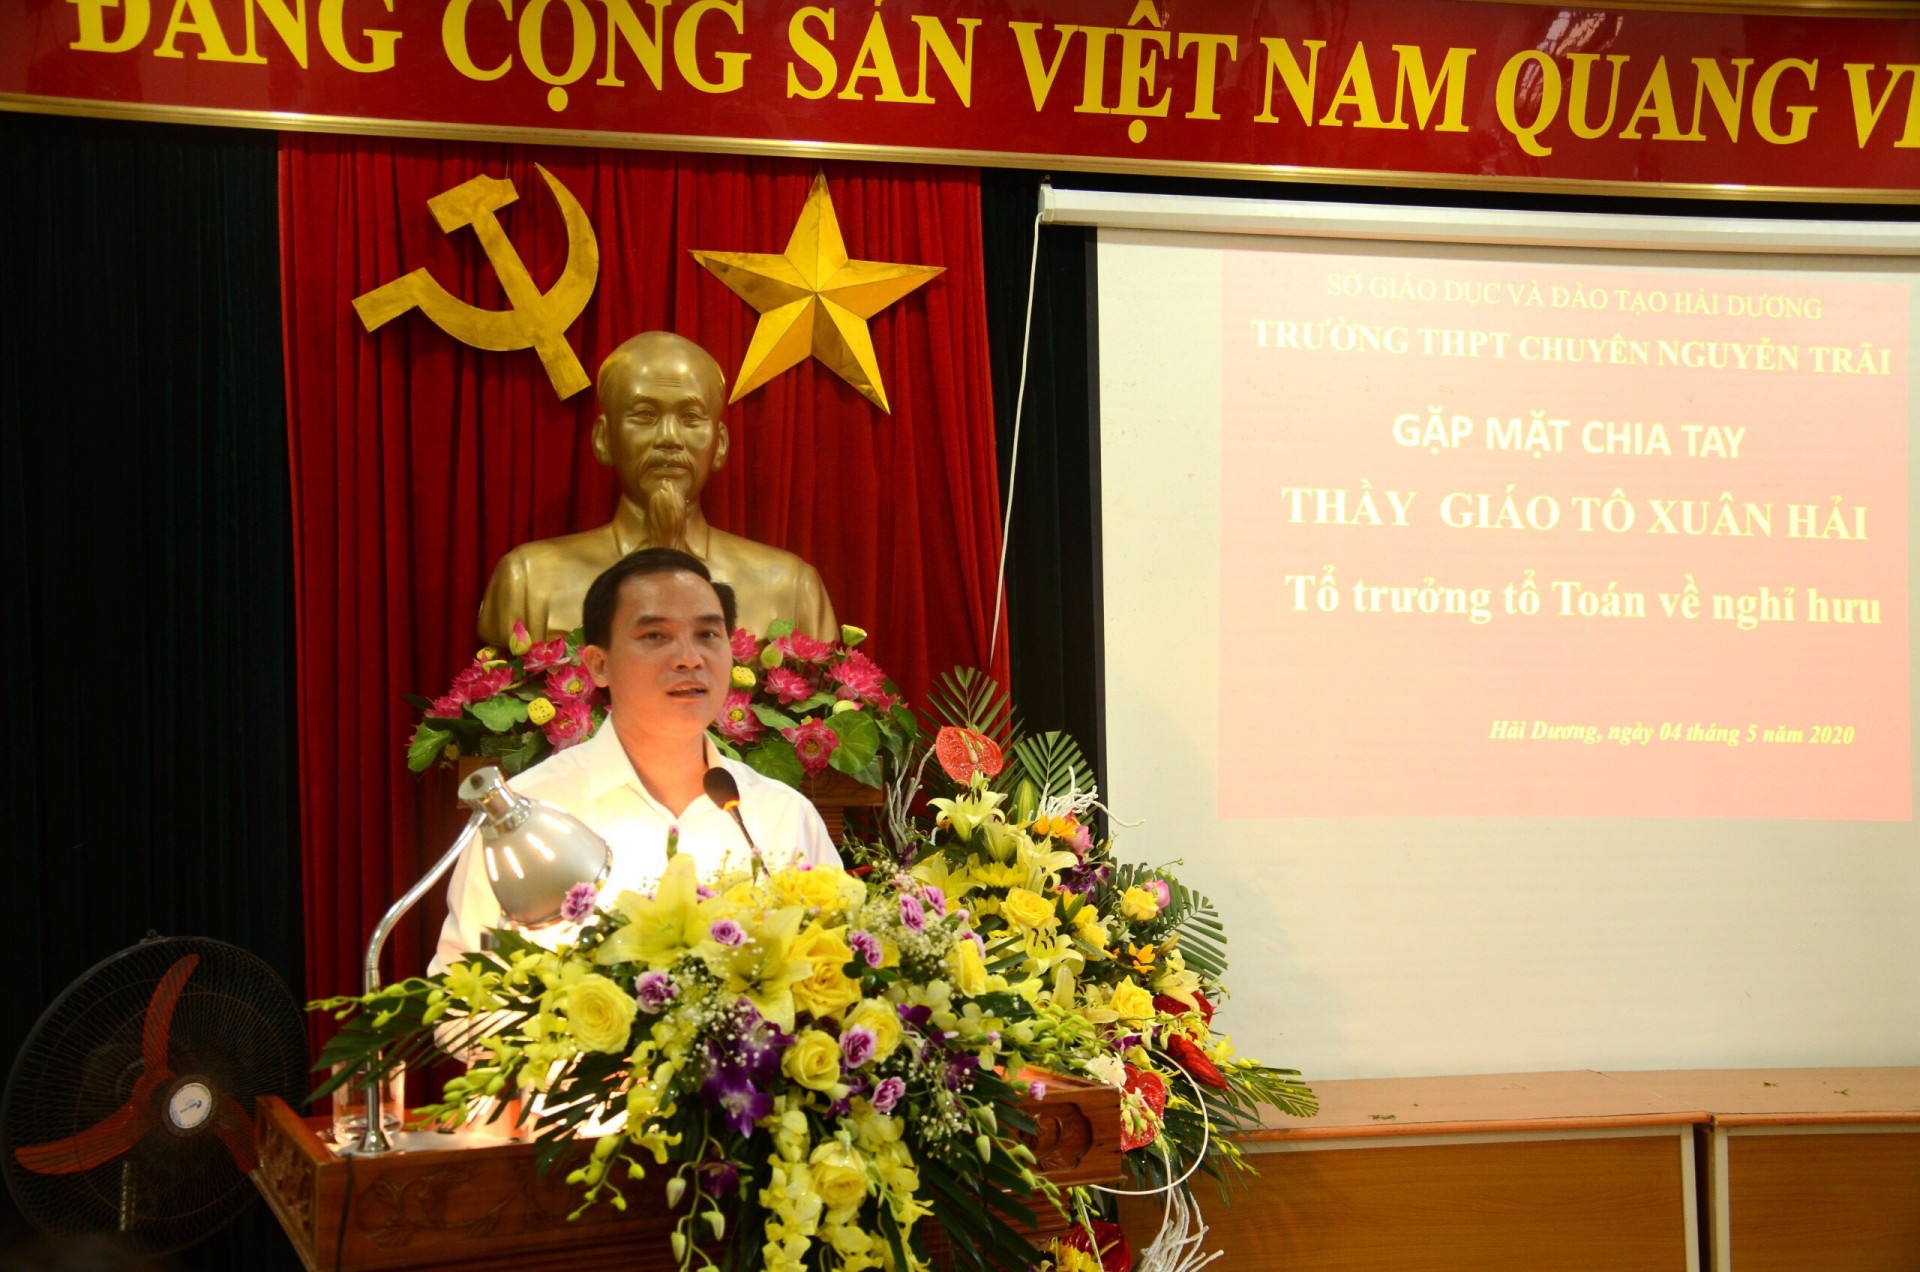 Thầy giáo Trịnh Ngọc Tùng – Hiệu trưởng nhà trường phát biểu trong buổi gặp mặt chia tay thầy Tô Xuân Hải